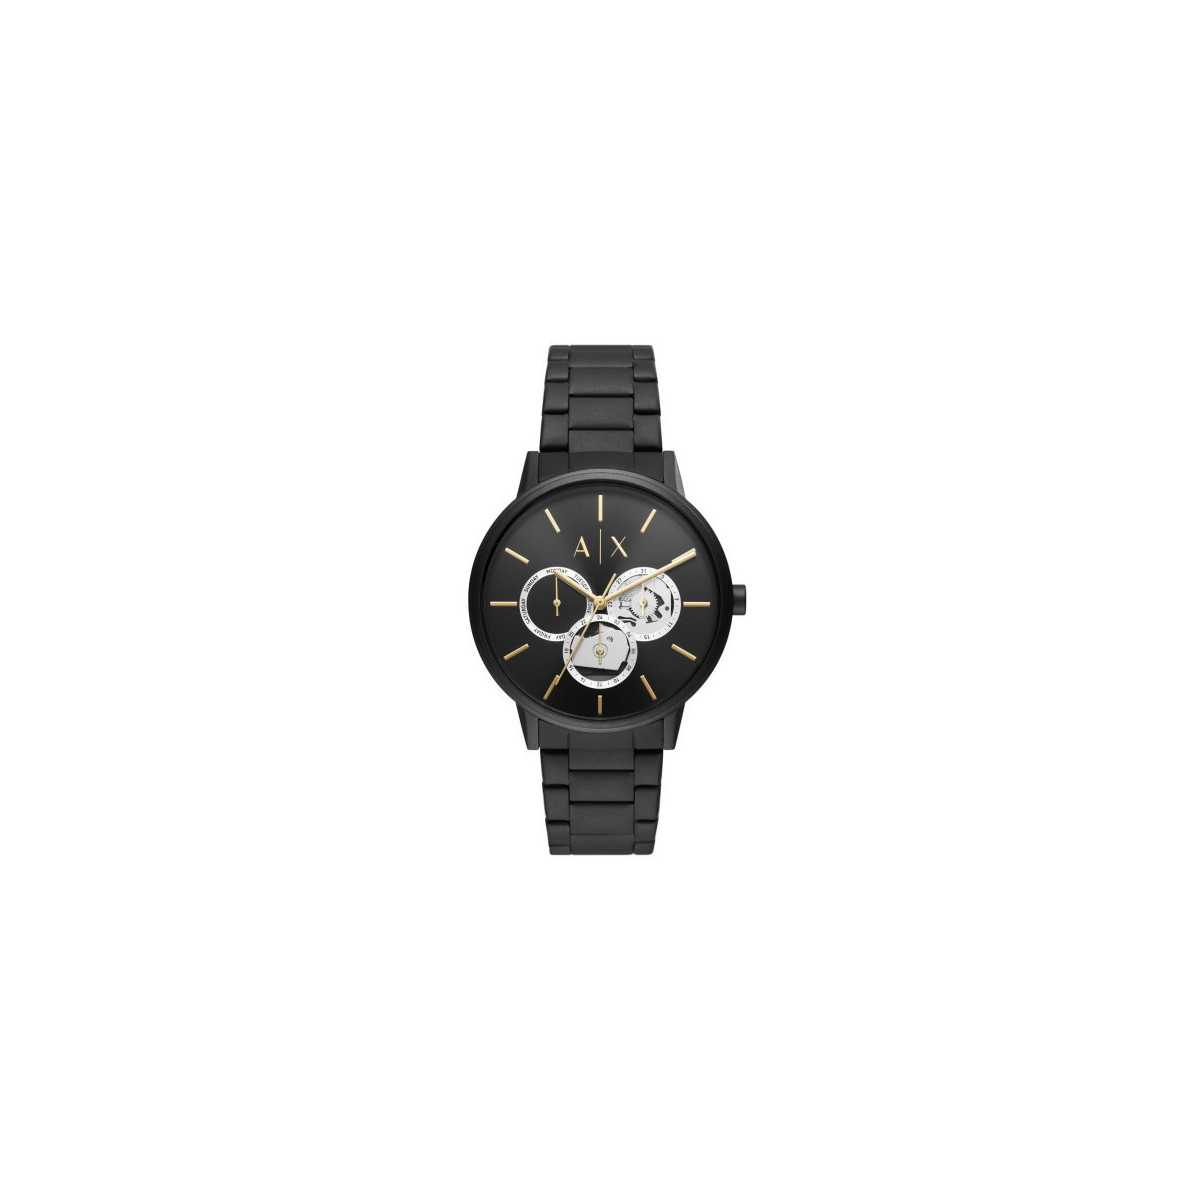 Reloj Armani Exchange Cayde AX2748